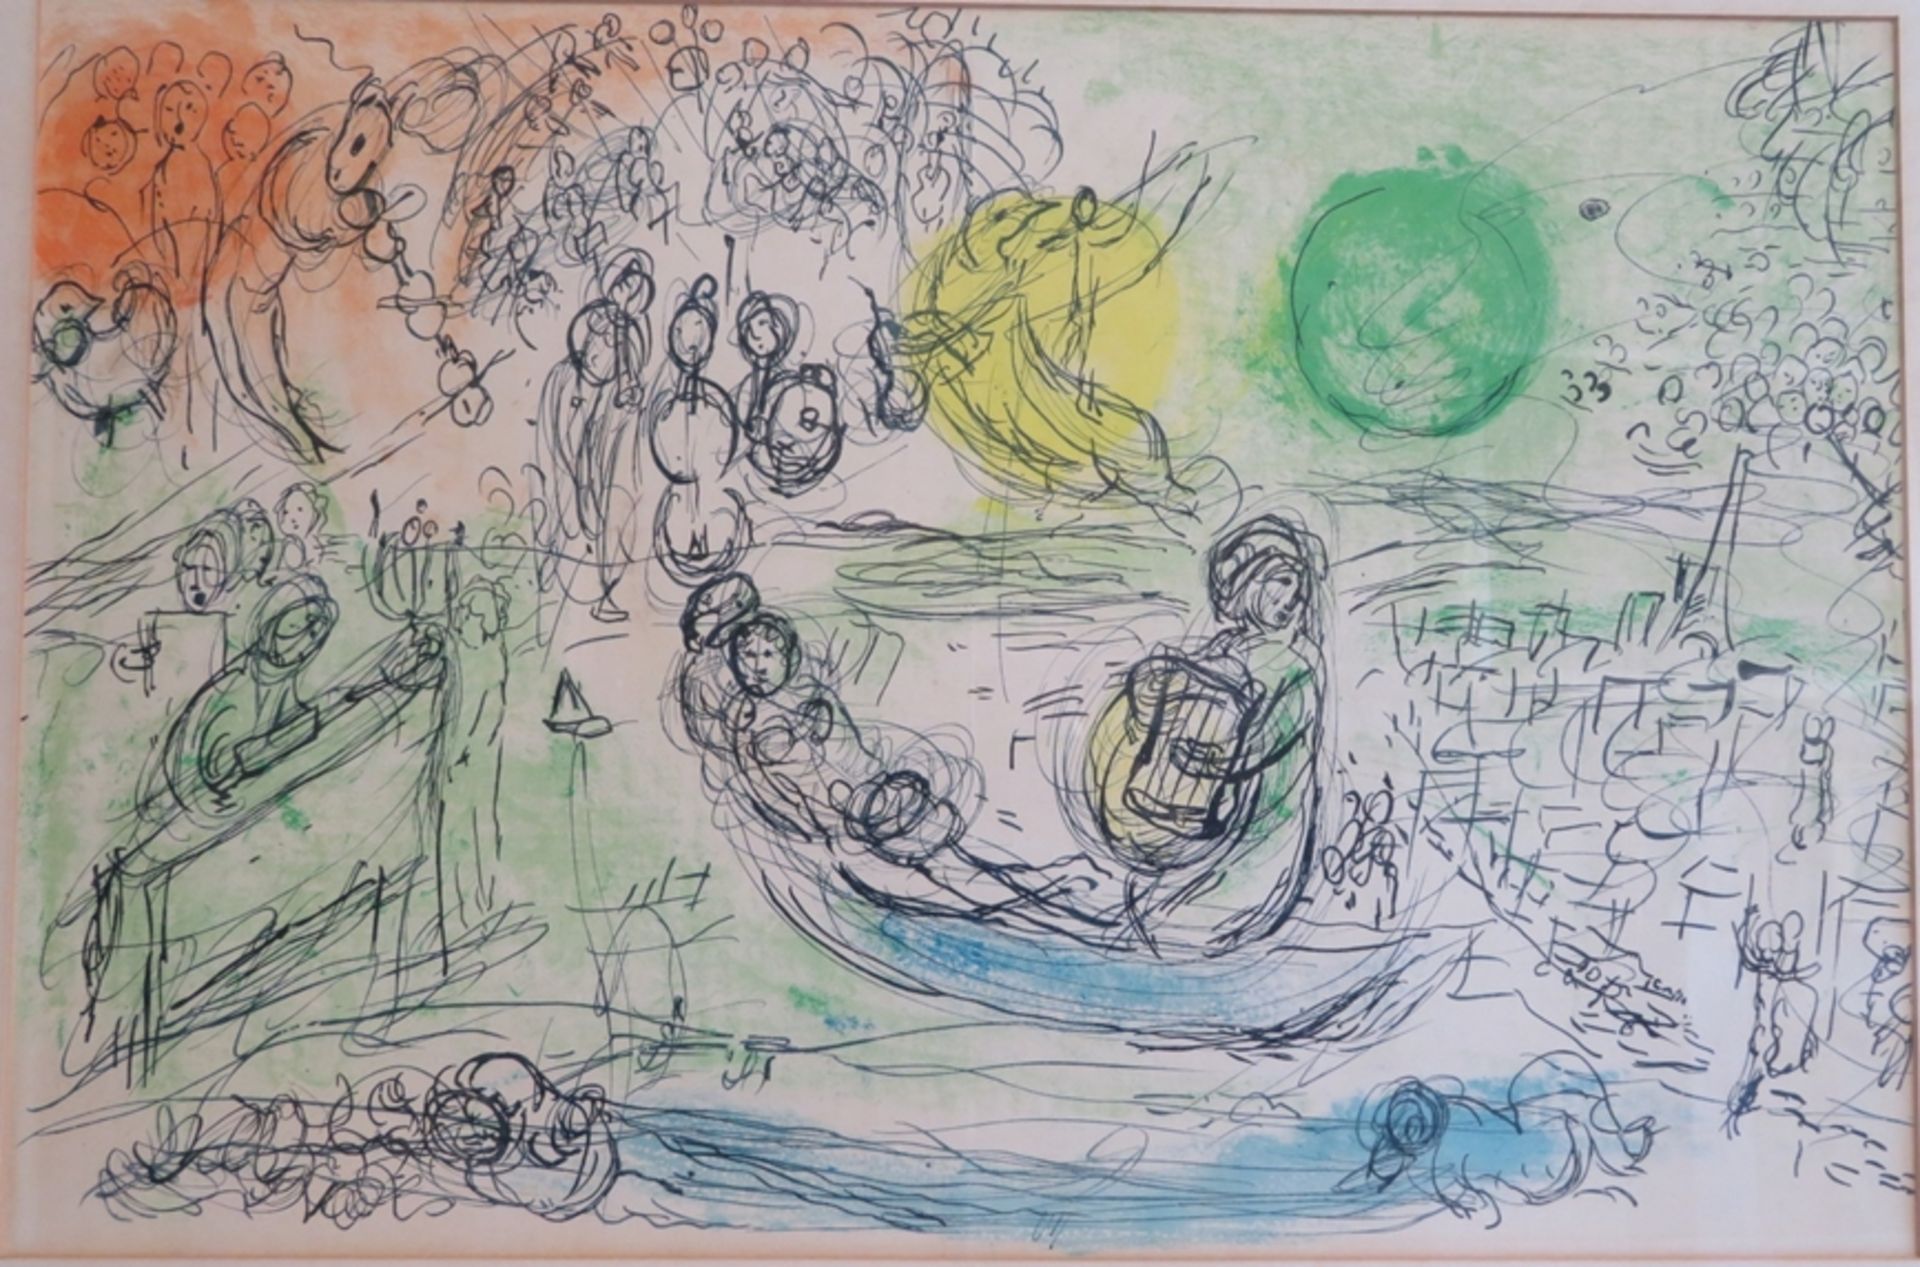 Chagall, Marc, 1887 - 1985, Peskowatik - Saint-Paul-de-Vence, französischer-russischer Maler, "Das